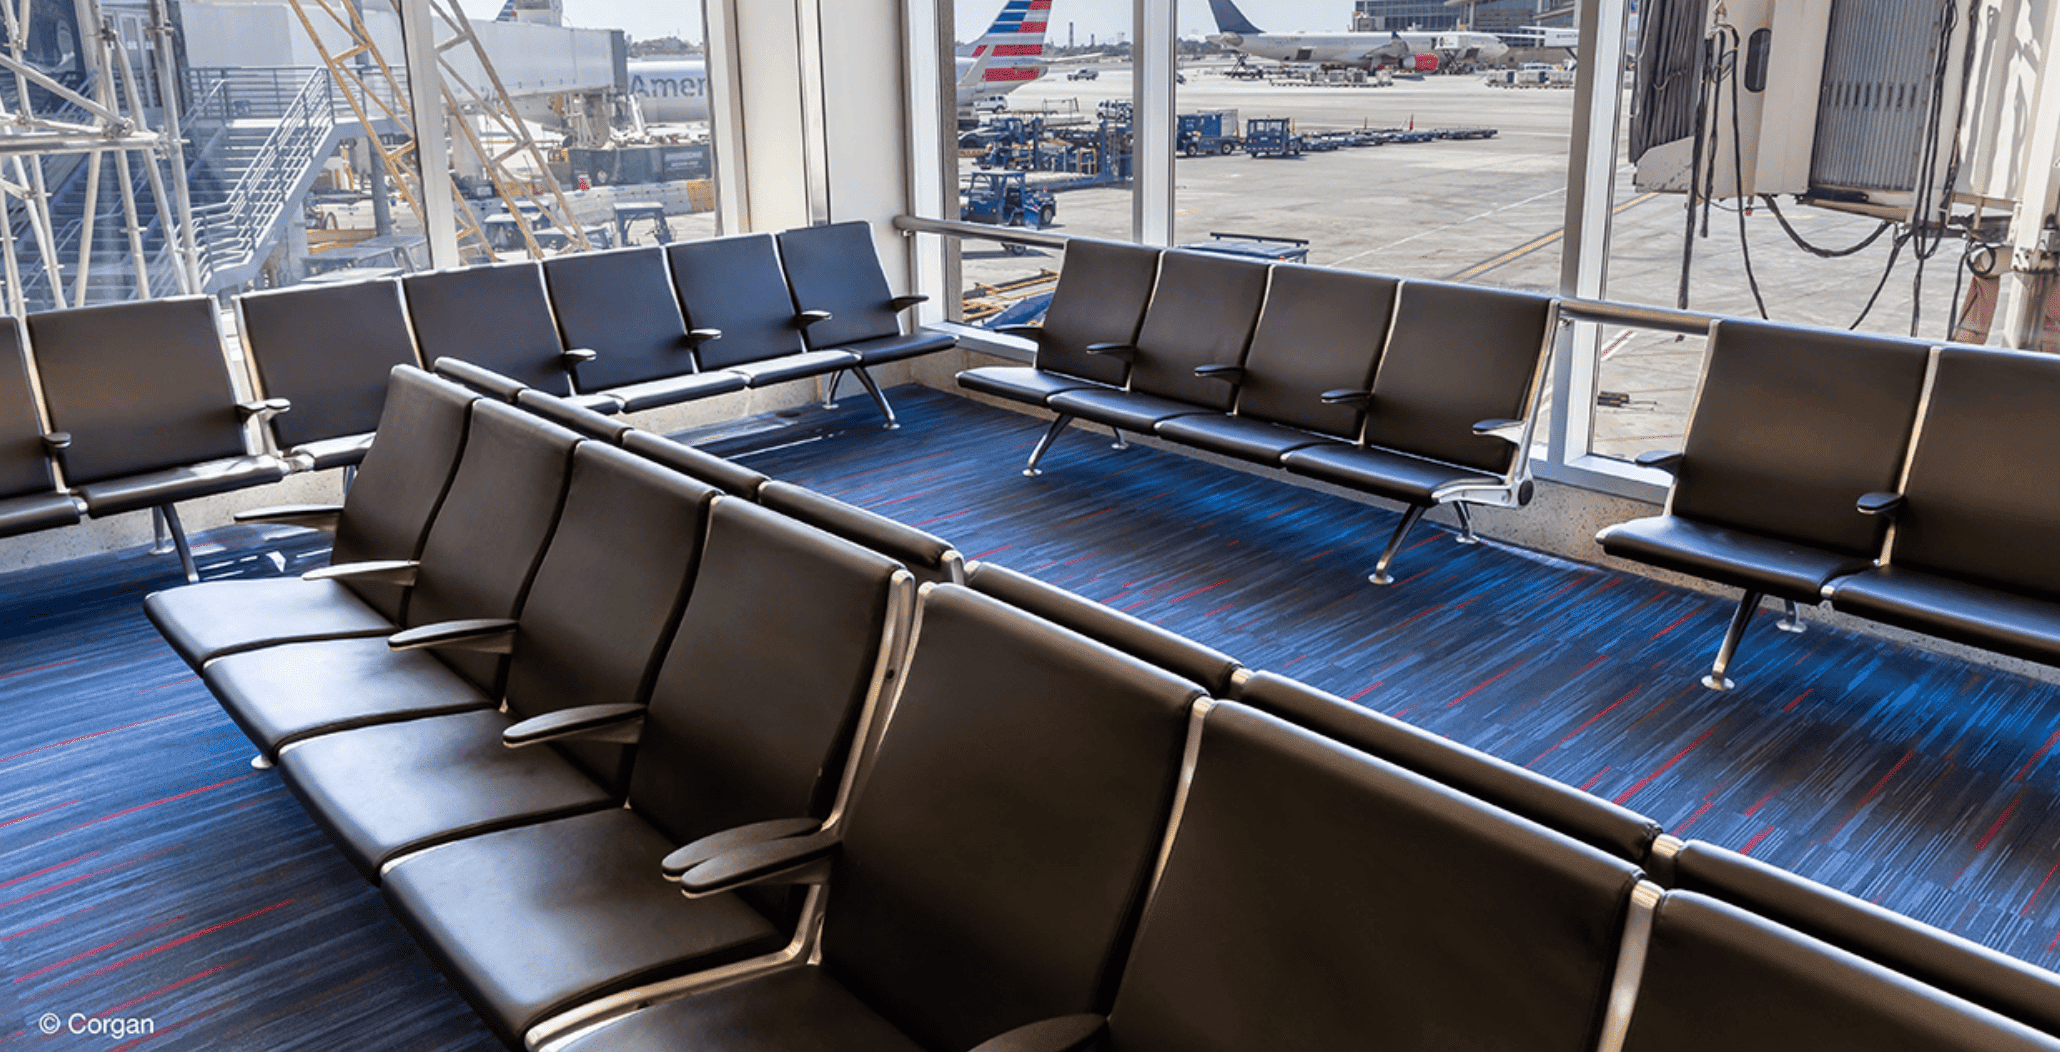 Flyaway / Airport furniture